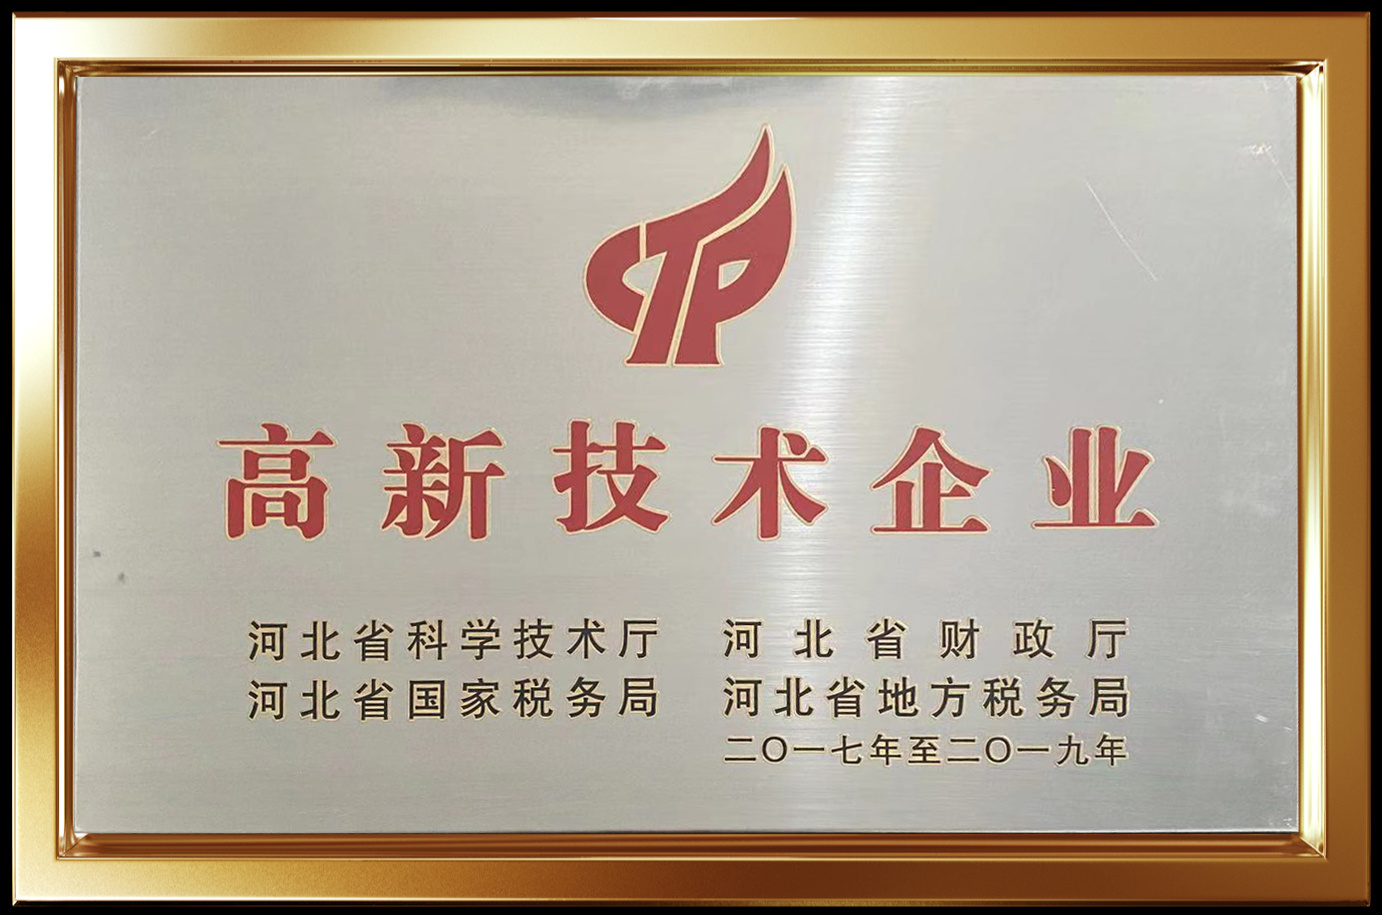 2017年被评为河北省高新技术企业